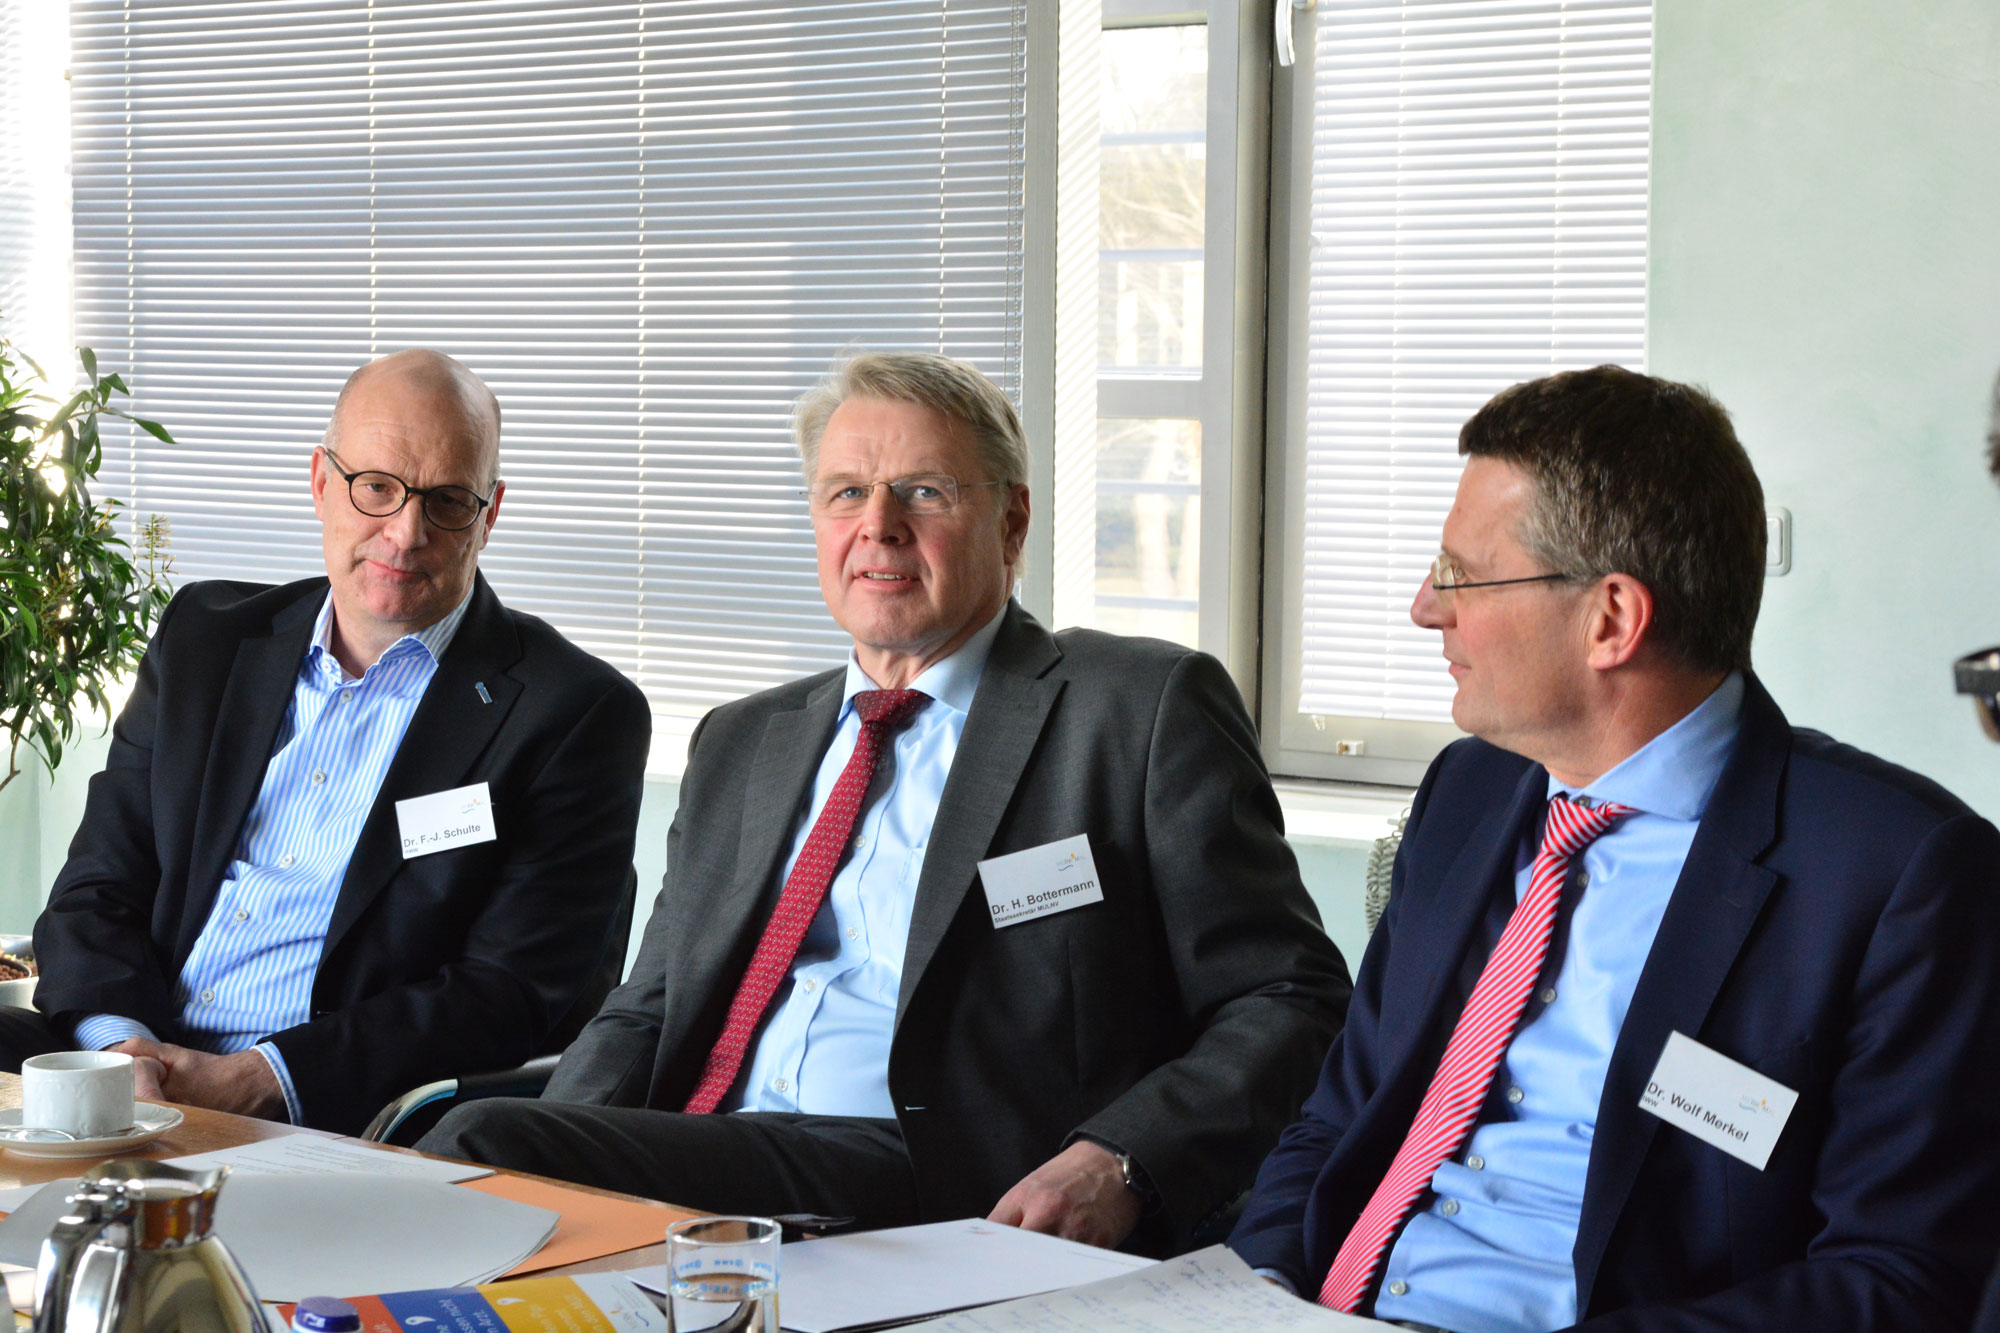   Dr. Franz-Josef Schulte (RWW), Staatssekretär Dr. Heinrich Bottermann und Dr.-Ing. Wolf Merkel (IWW) sind zufrieden mit dem Verlauf des Projekts und können sich einen Roll-Out auf einen größeren Untersuchungsraum vorstellen.  